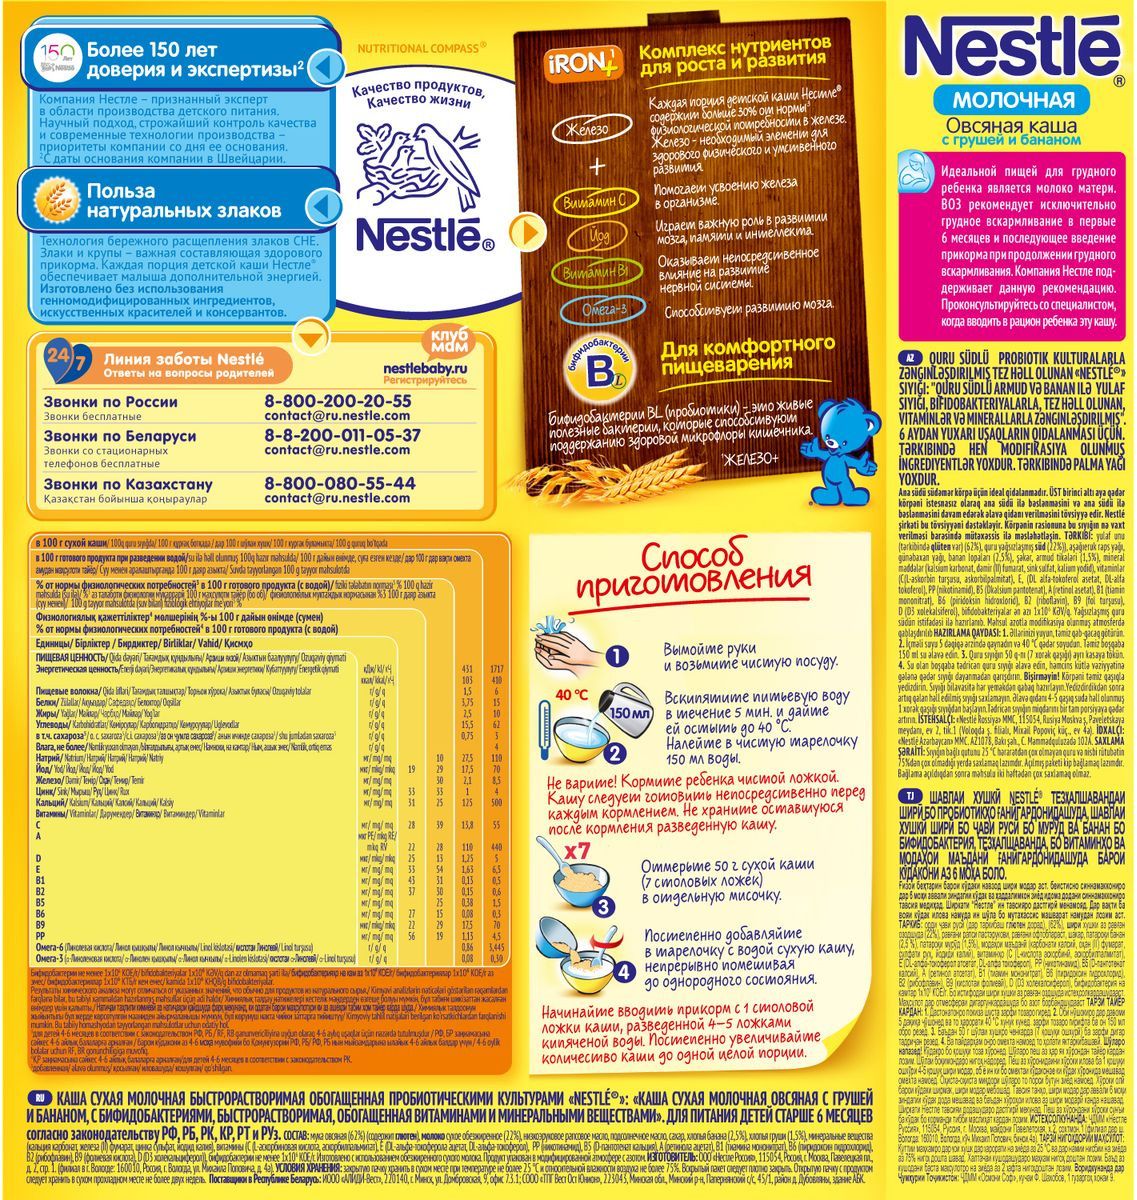 Nestle     , 220 